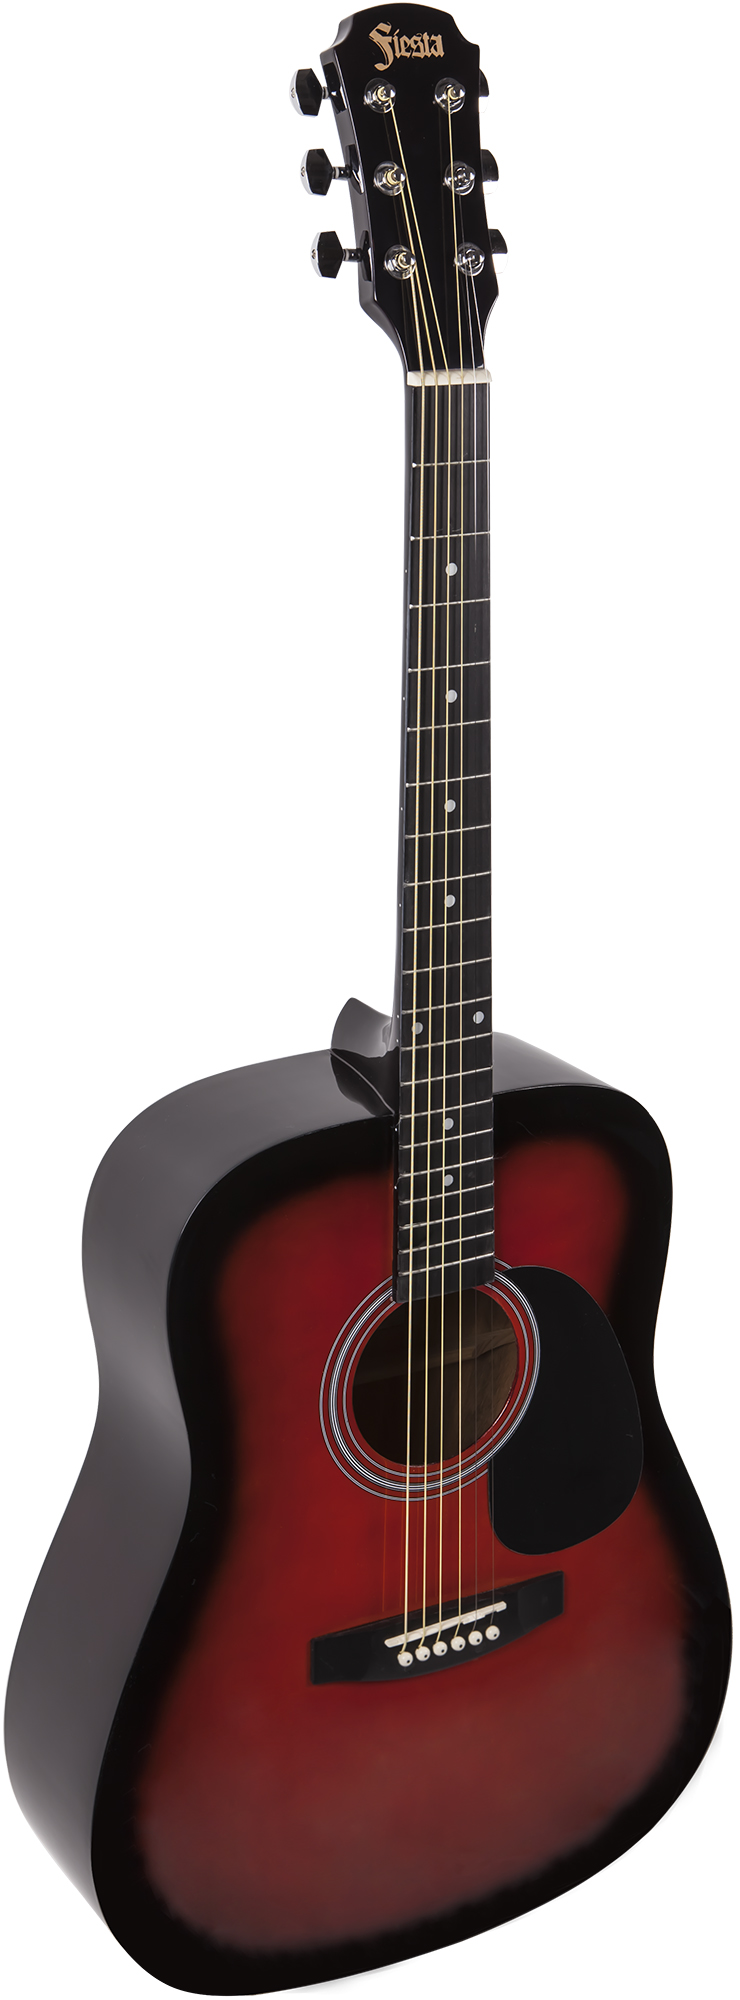 Акустические гитары Aria FIESTA FST-300 BS акустические гитары beaumont dg80 rds